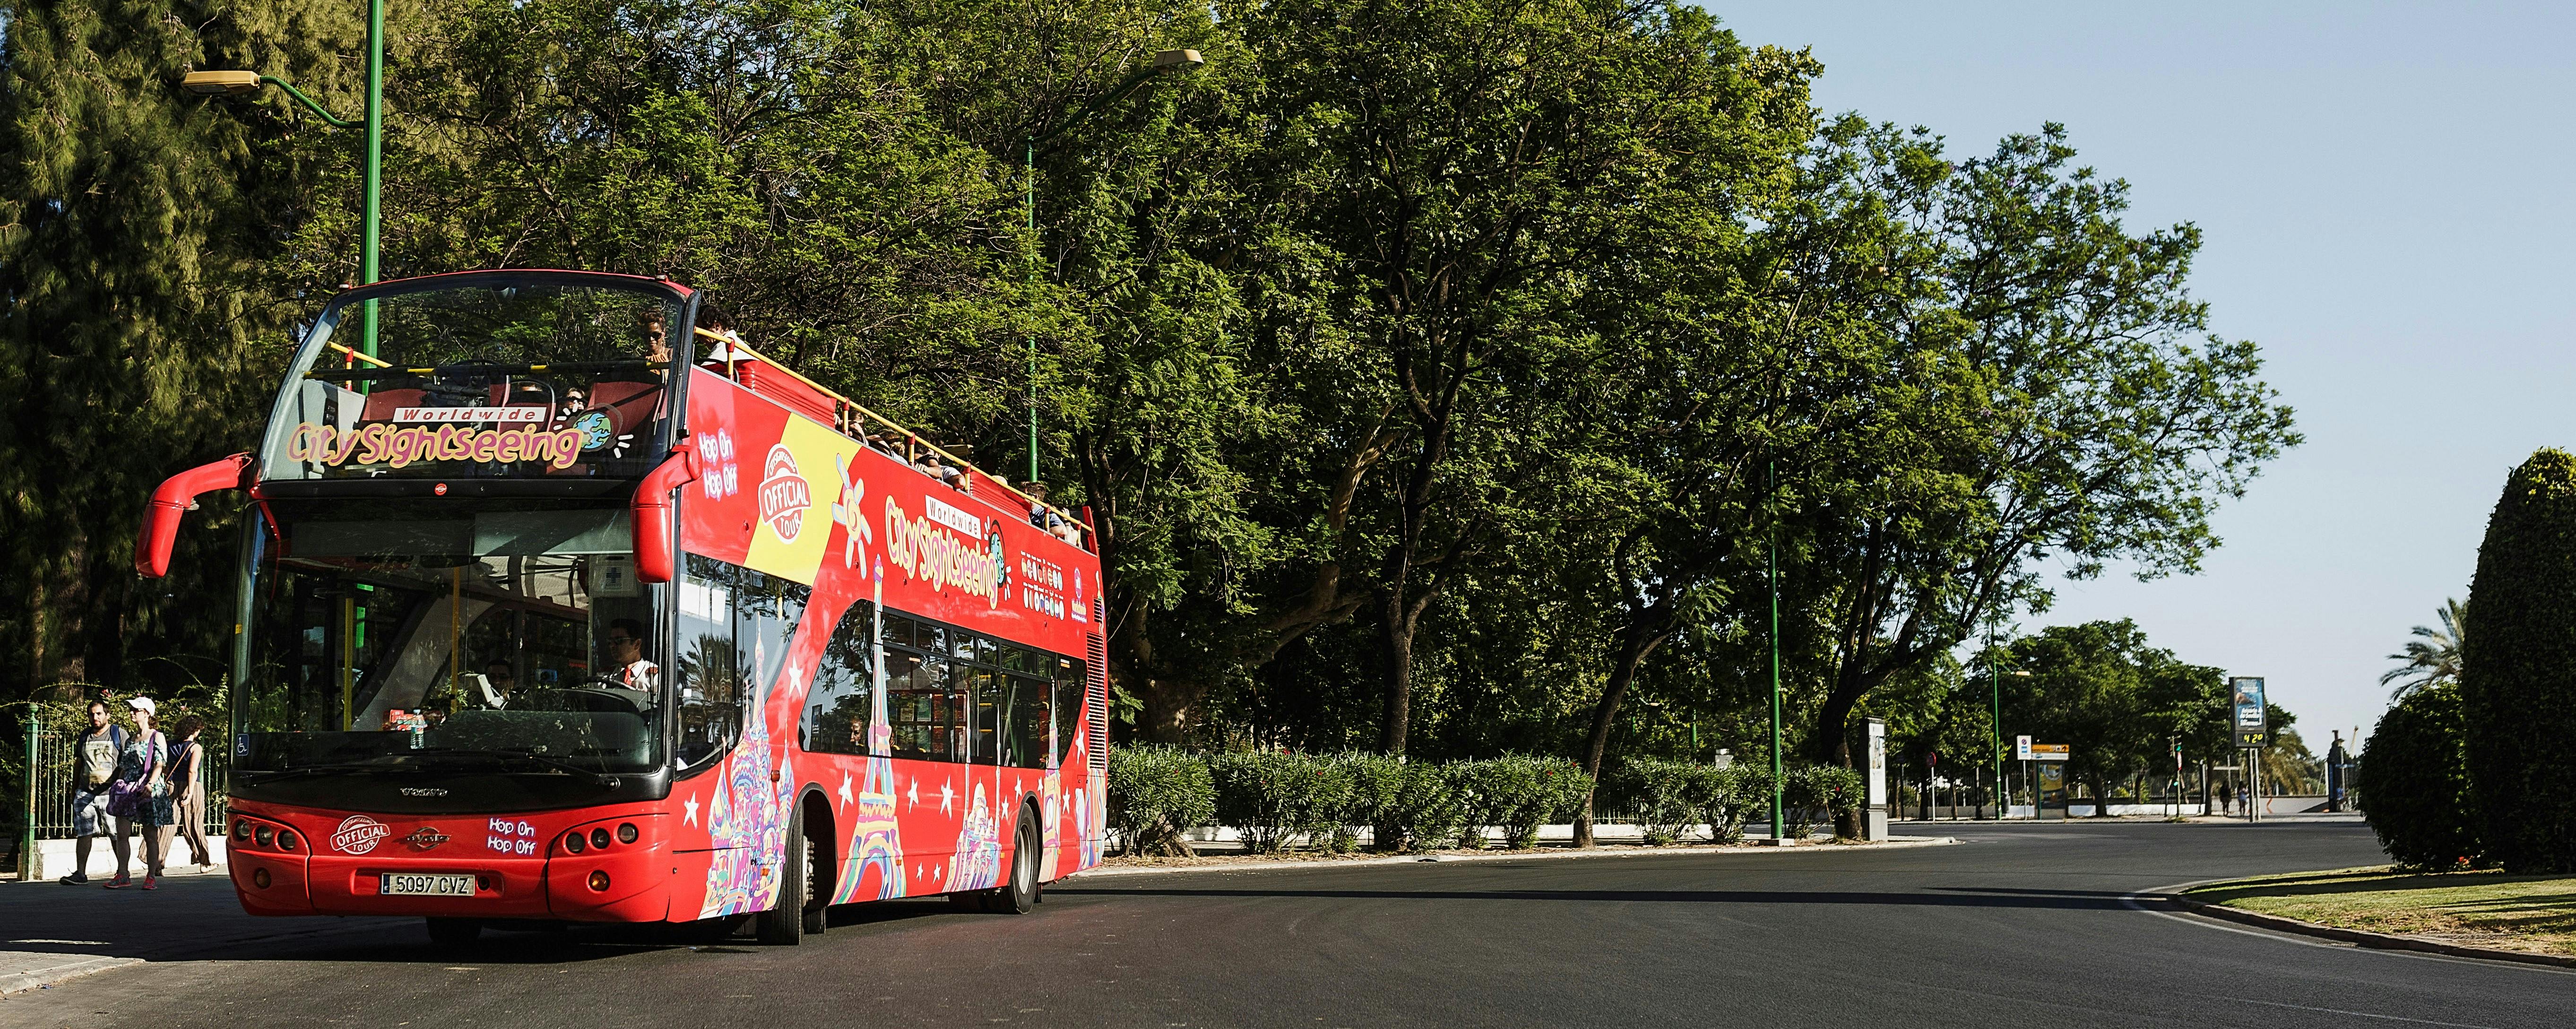 Wycieczka autobusem Hop-On Hop-Off City Sightseeing w mieście Benalmádena